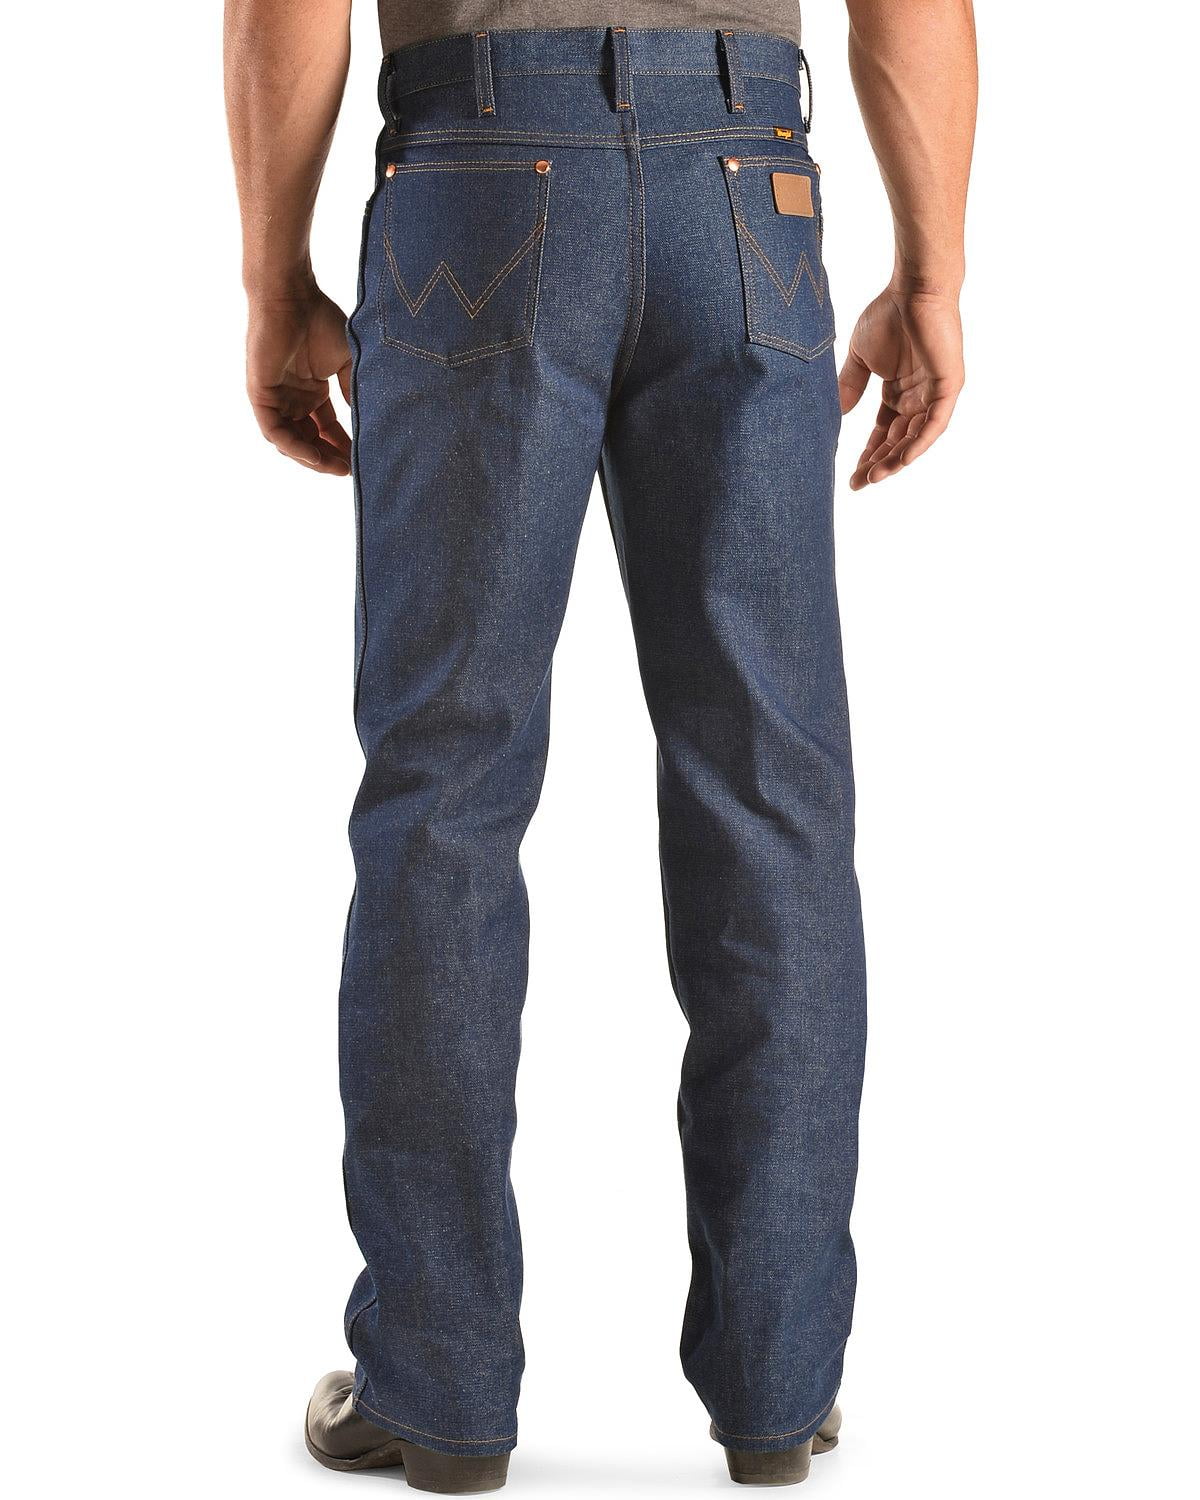 Wrangler Men's Jeans Slim Fit -Rigid 